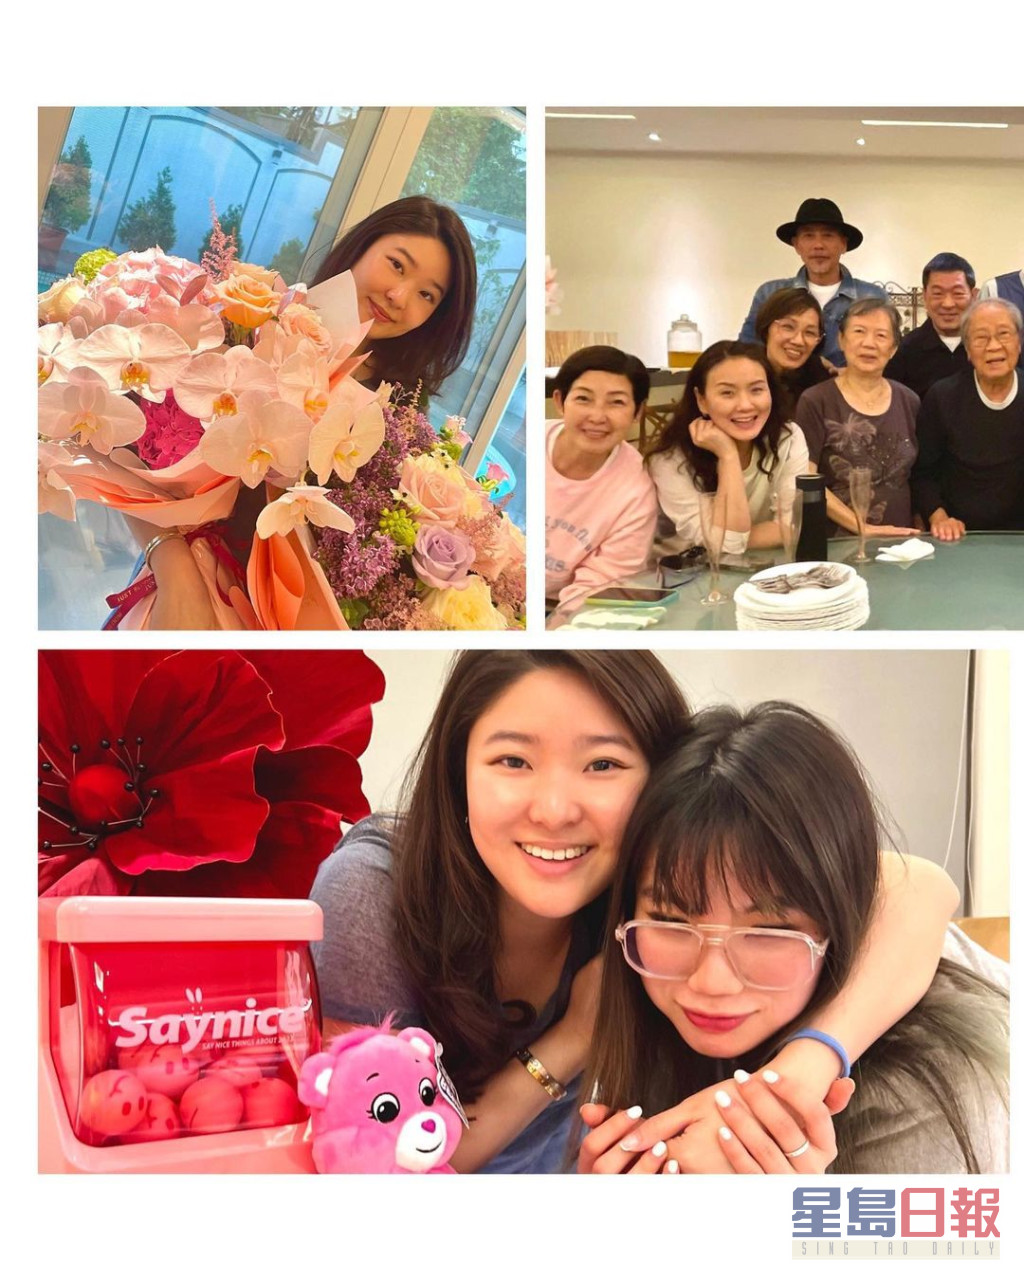 韓馬利與丈夫杜燕歌、袁偉豪與太張寶兒、黎芷珊等藝人為Charmaine慶祝生日。